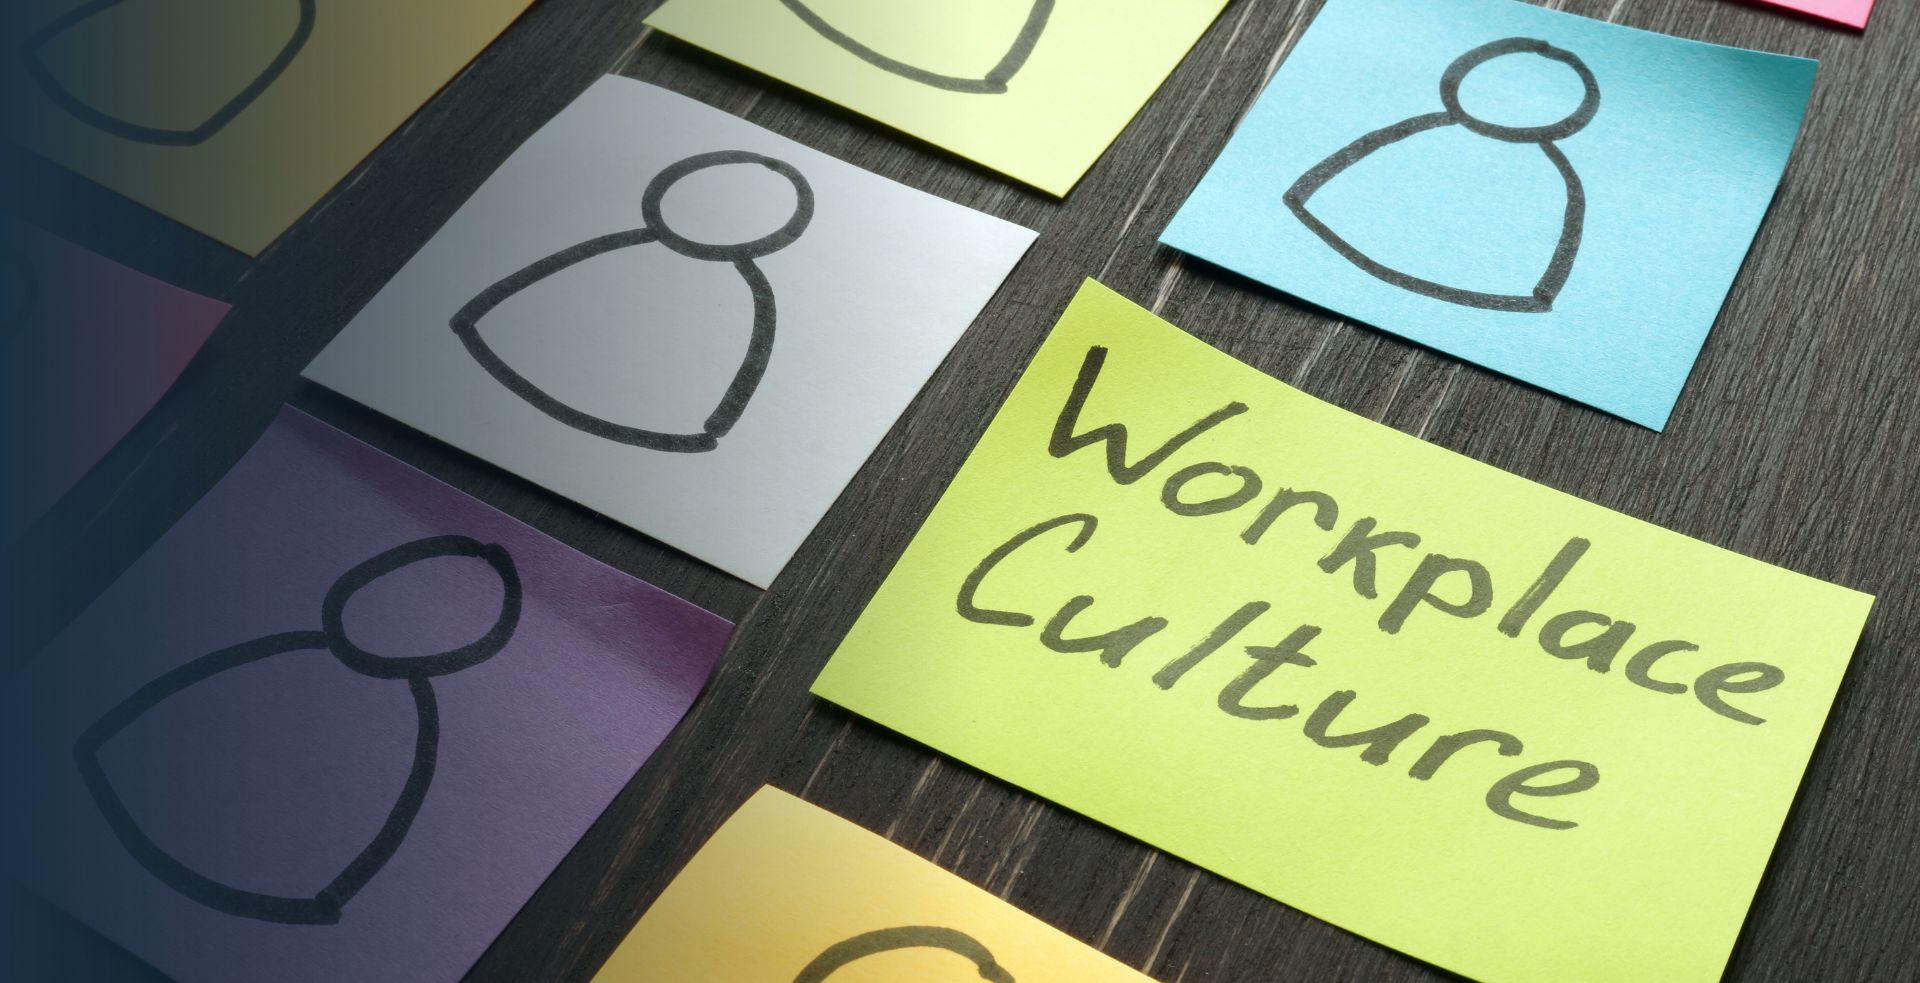 Unternehmenskultur: Mit positiven Elementen eine gute Arbeitsatmosphäre schaffen